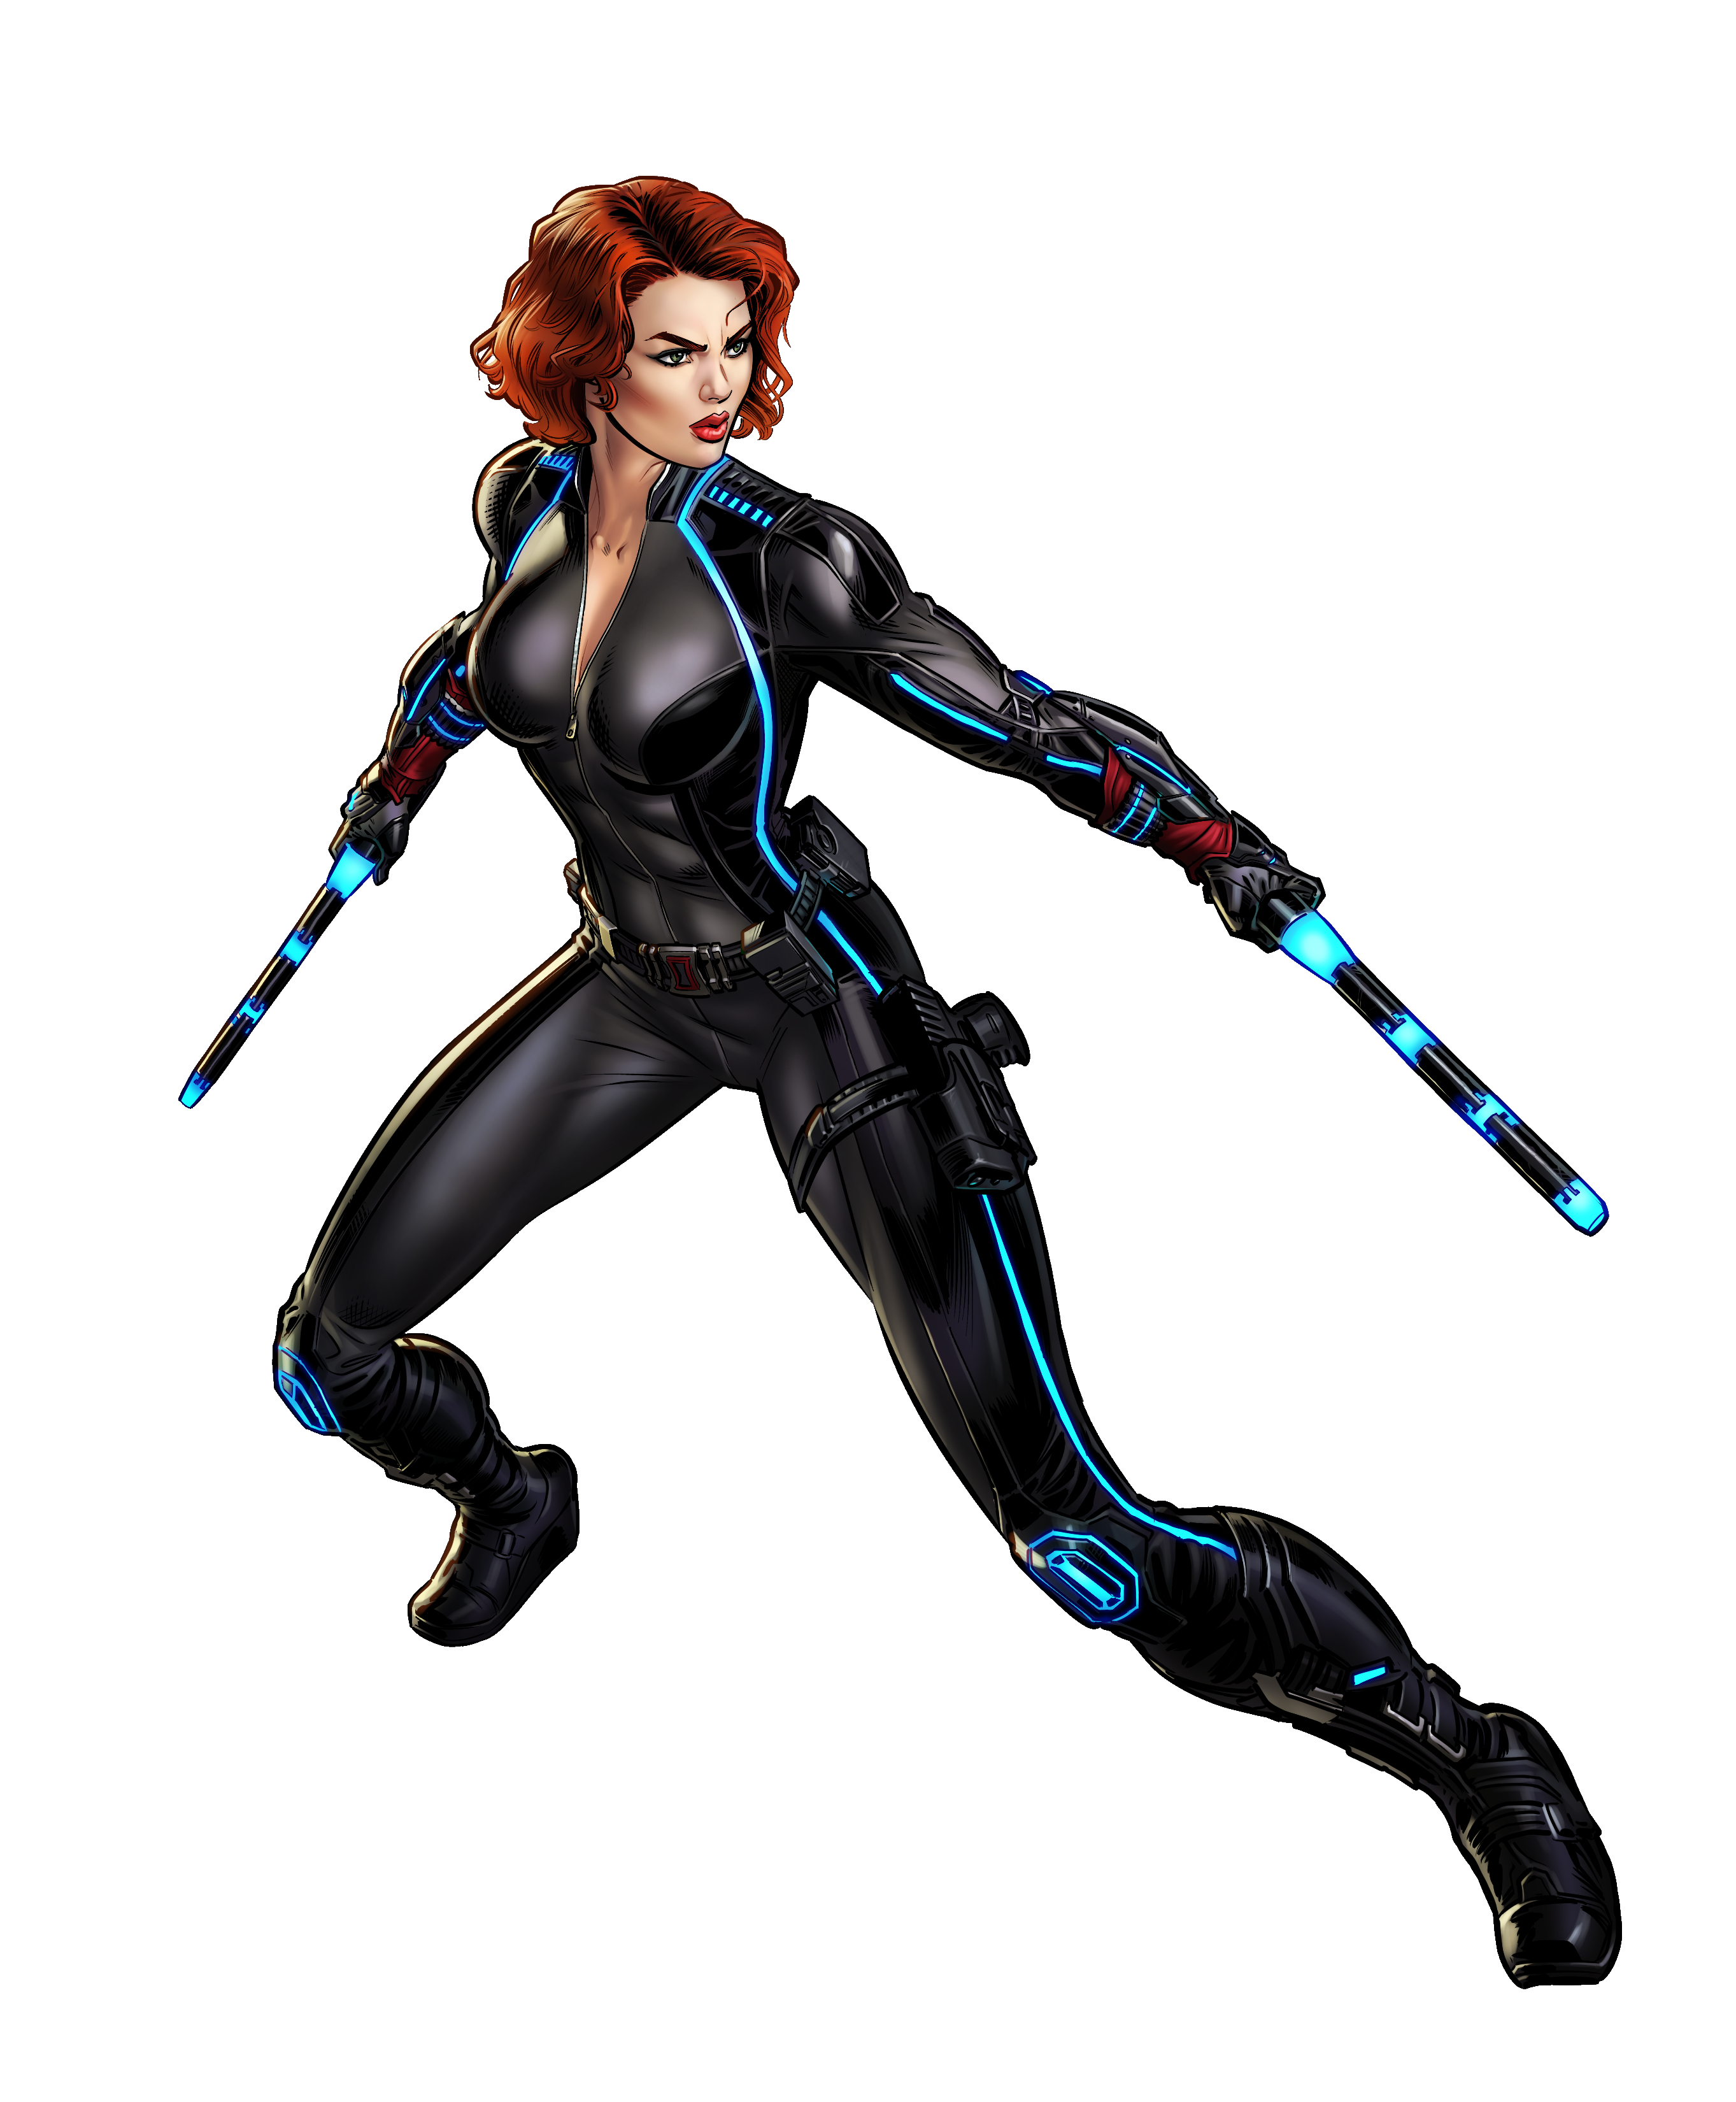 marvel avengers alliance 2 Black Widow by steeven7620 on ...